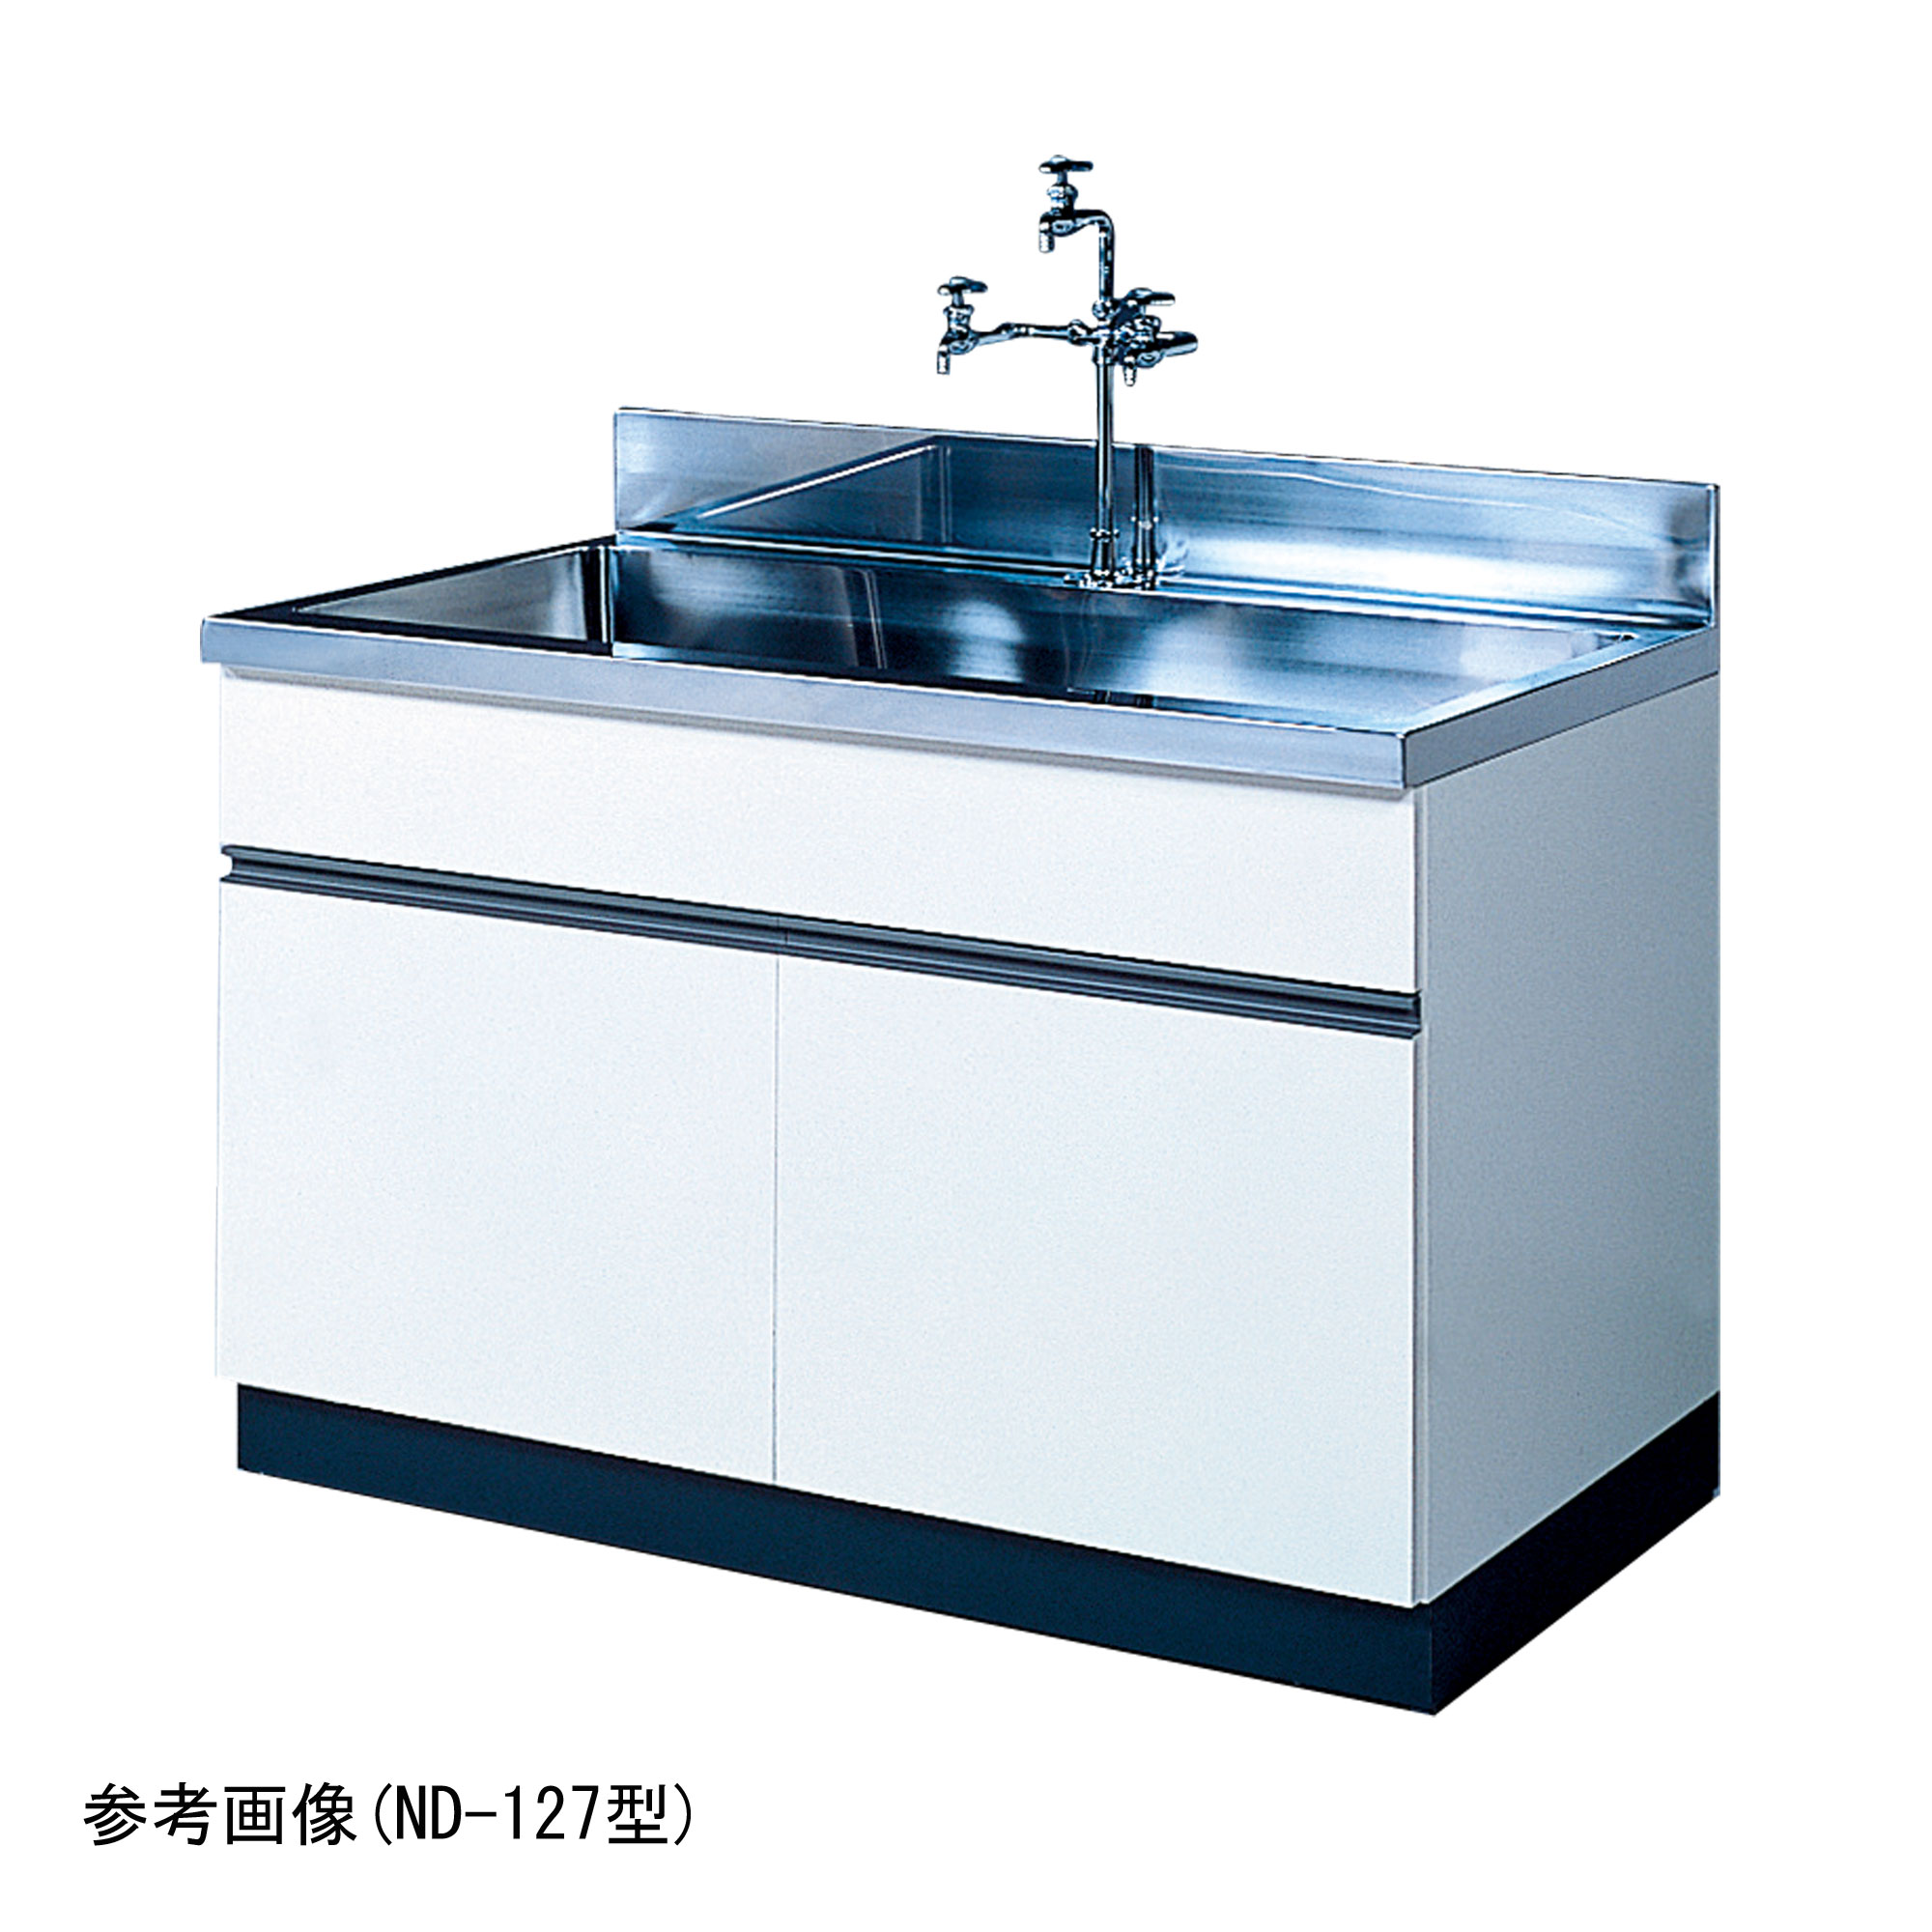 流し台 ND型 (大型水槽) ND-097型 - 柴田科学株式会社